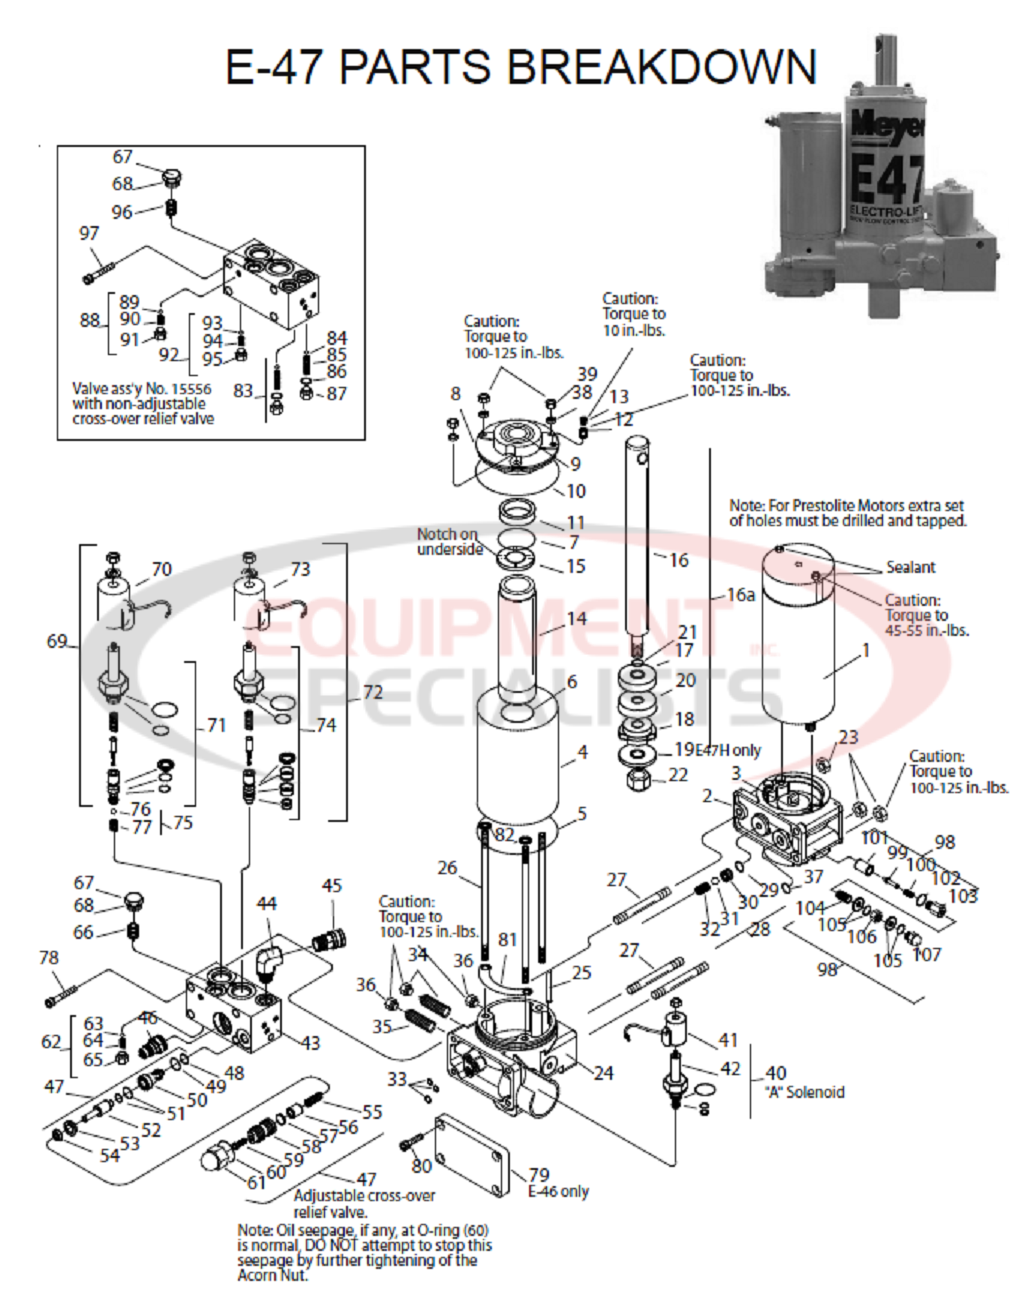 Meyer E-47 Parts Breakdown Breakdown Diagram